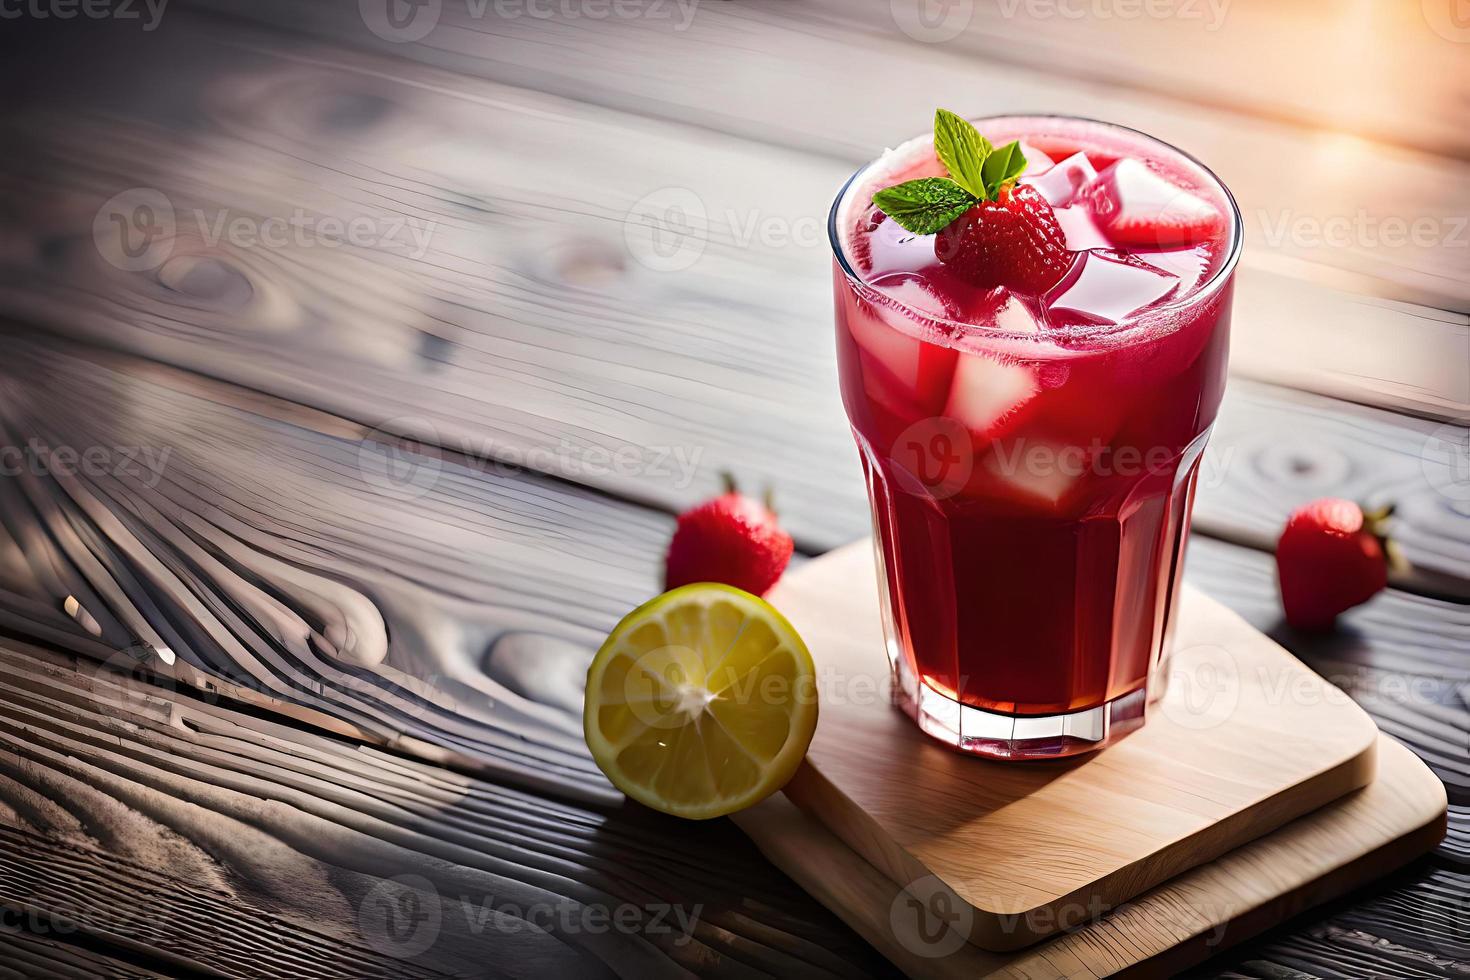 uppfriskande fruktig sommar dryck på tabell med citron- och mynta foto